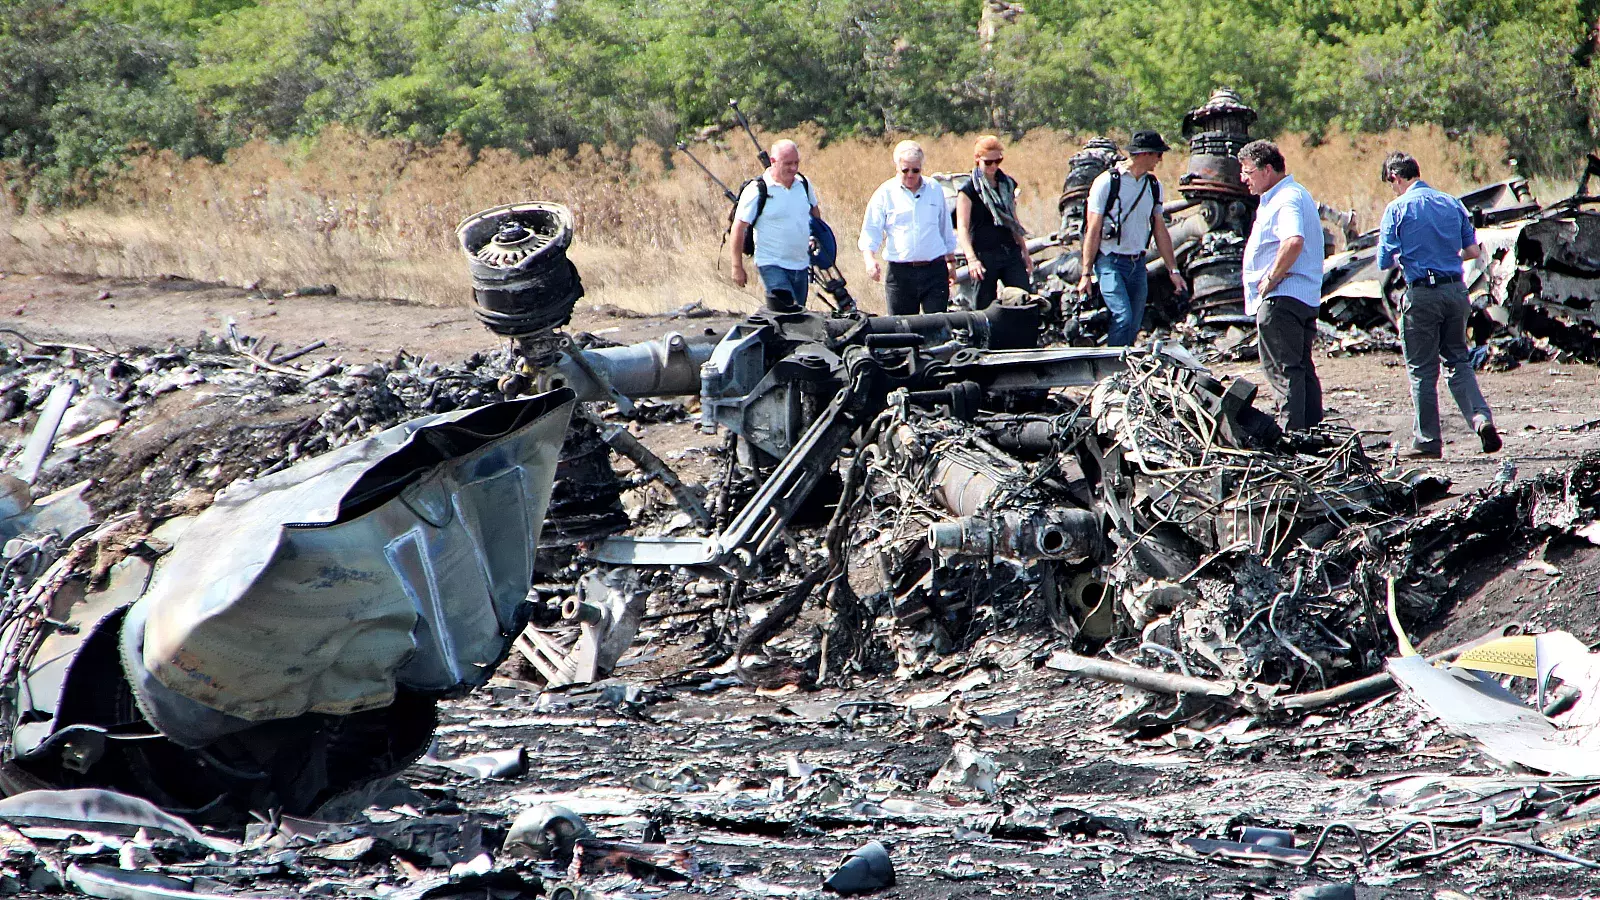 Putin autorizó el misil que derribó el avión MH17 en Ucrania en 2014, según investigación